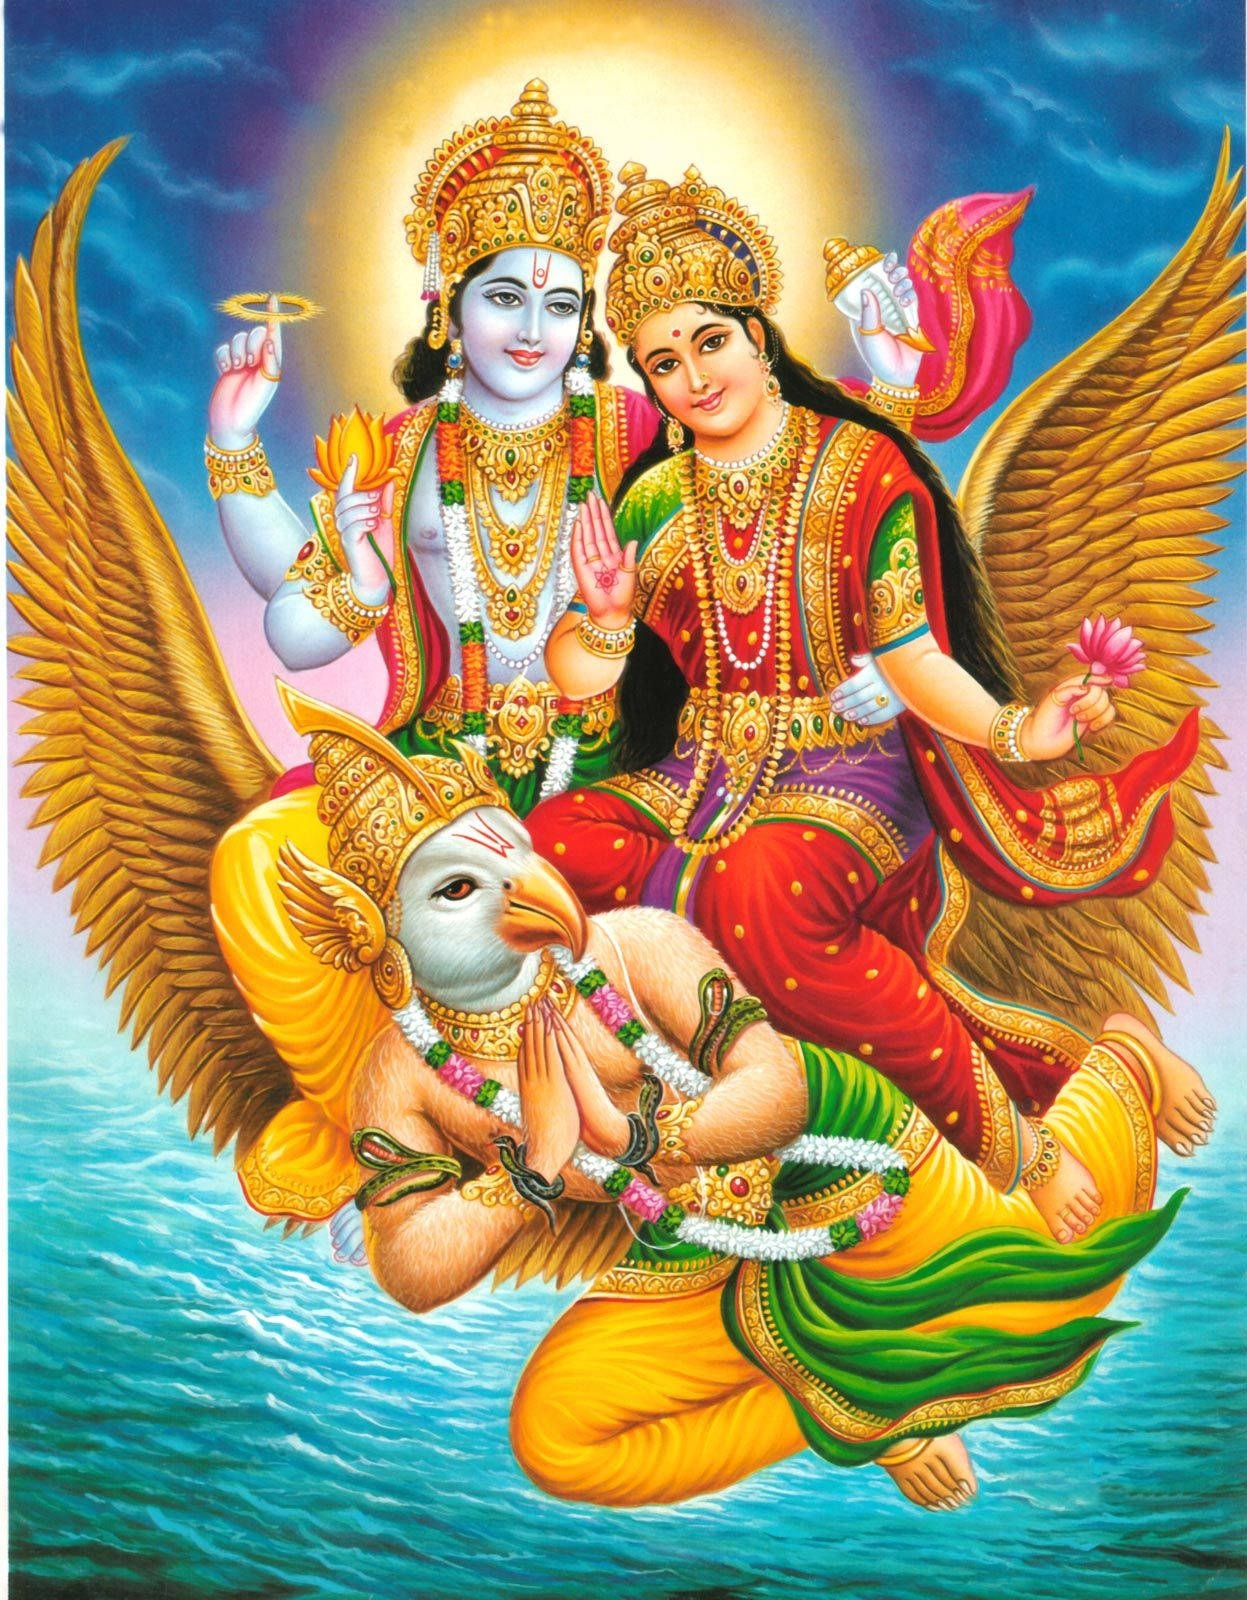 Lakshmi Narayan - Riding Garuda Over The Sea